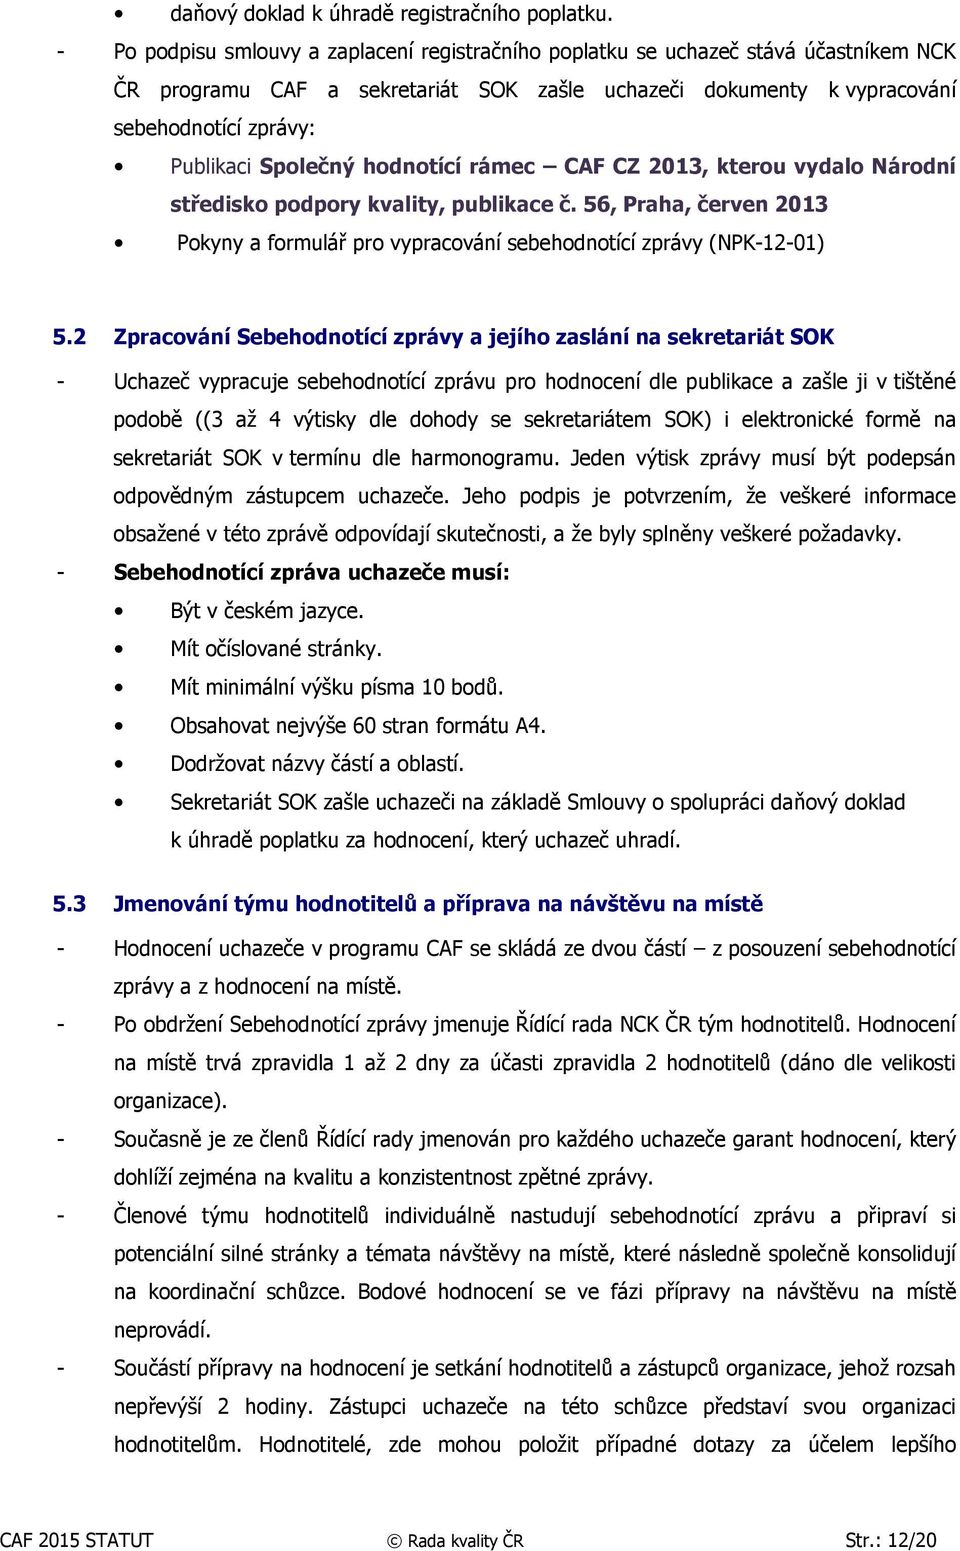 Společný hodnotící rámec CAF CZ 2013, kterou vydalo Národní středisko podpory kvality, publikace č. 56, Praha, červen 2013 Pokyny a formulář pro vypracování sebehodnotící zprávy (NPK-12-01) 5.